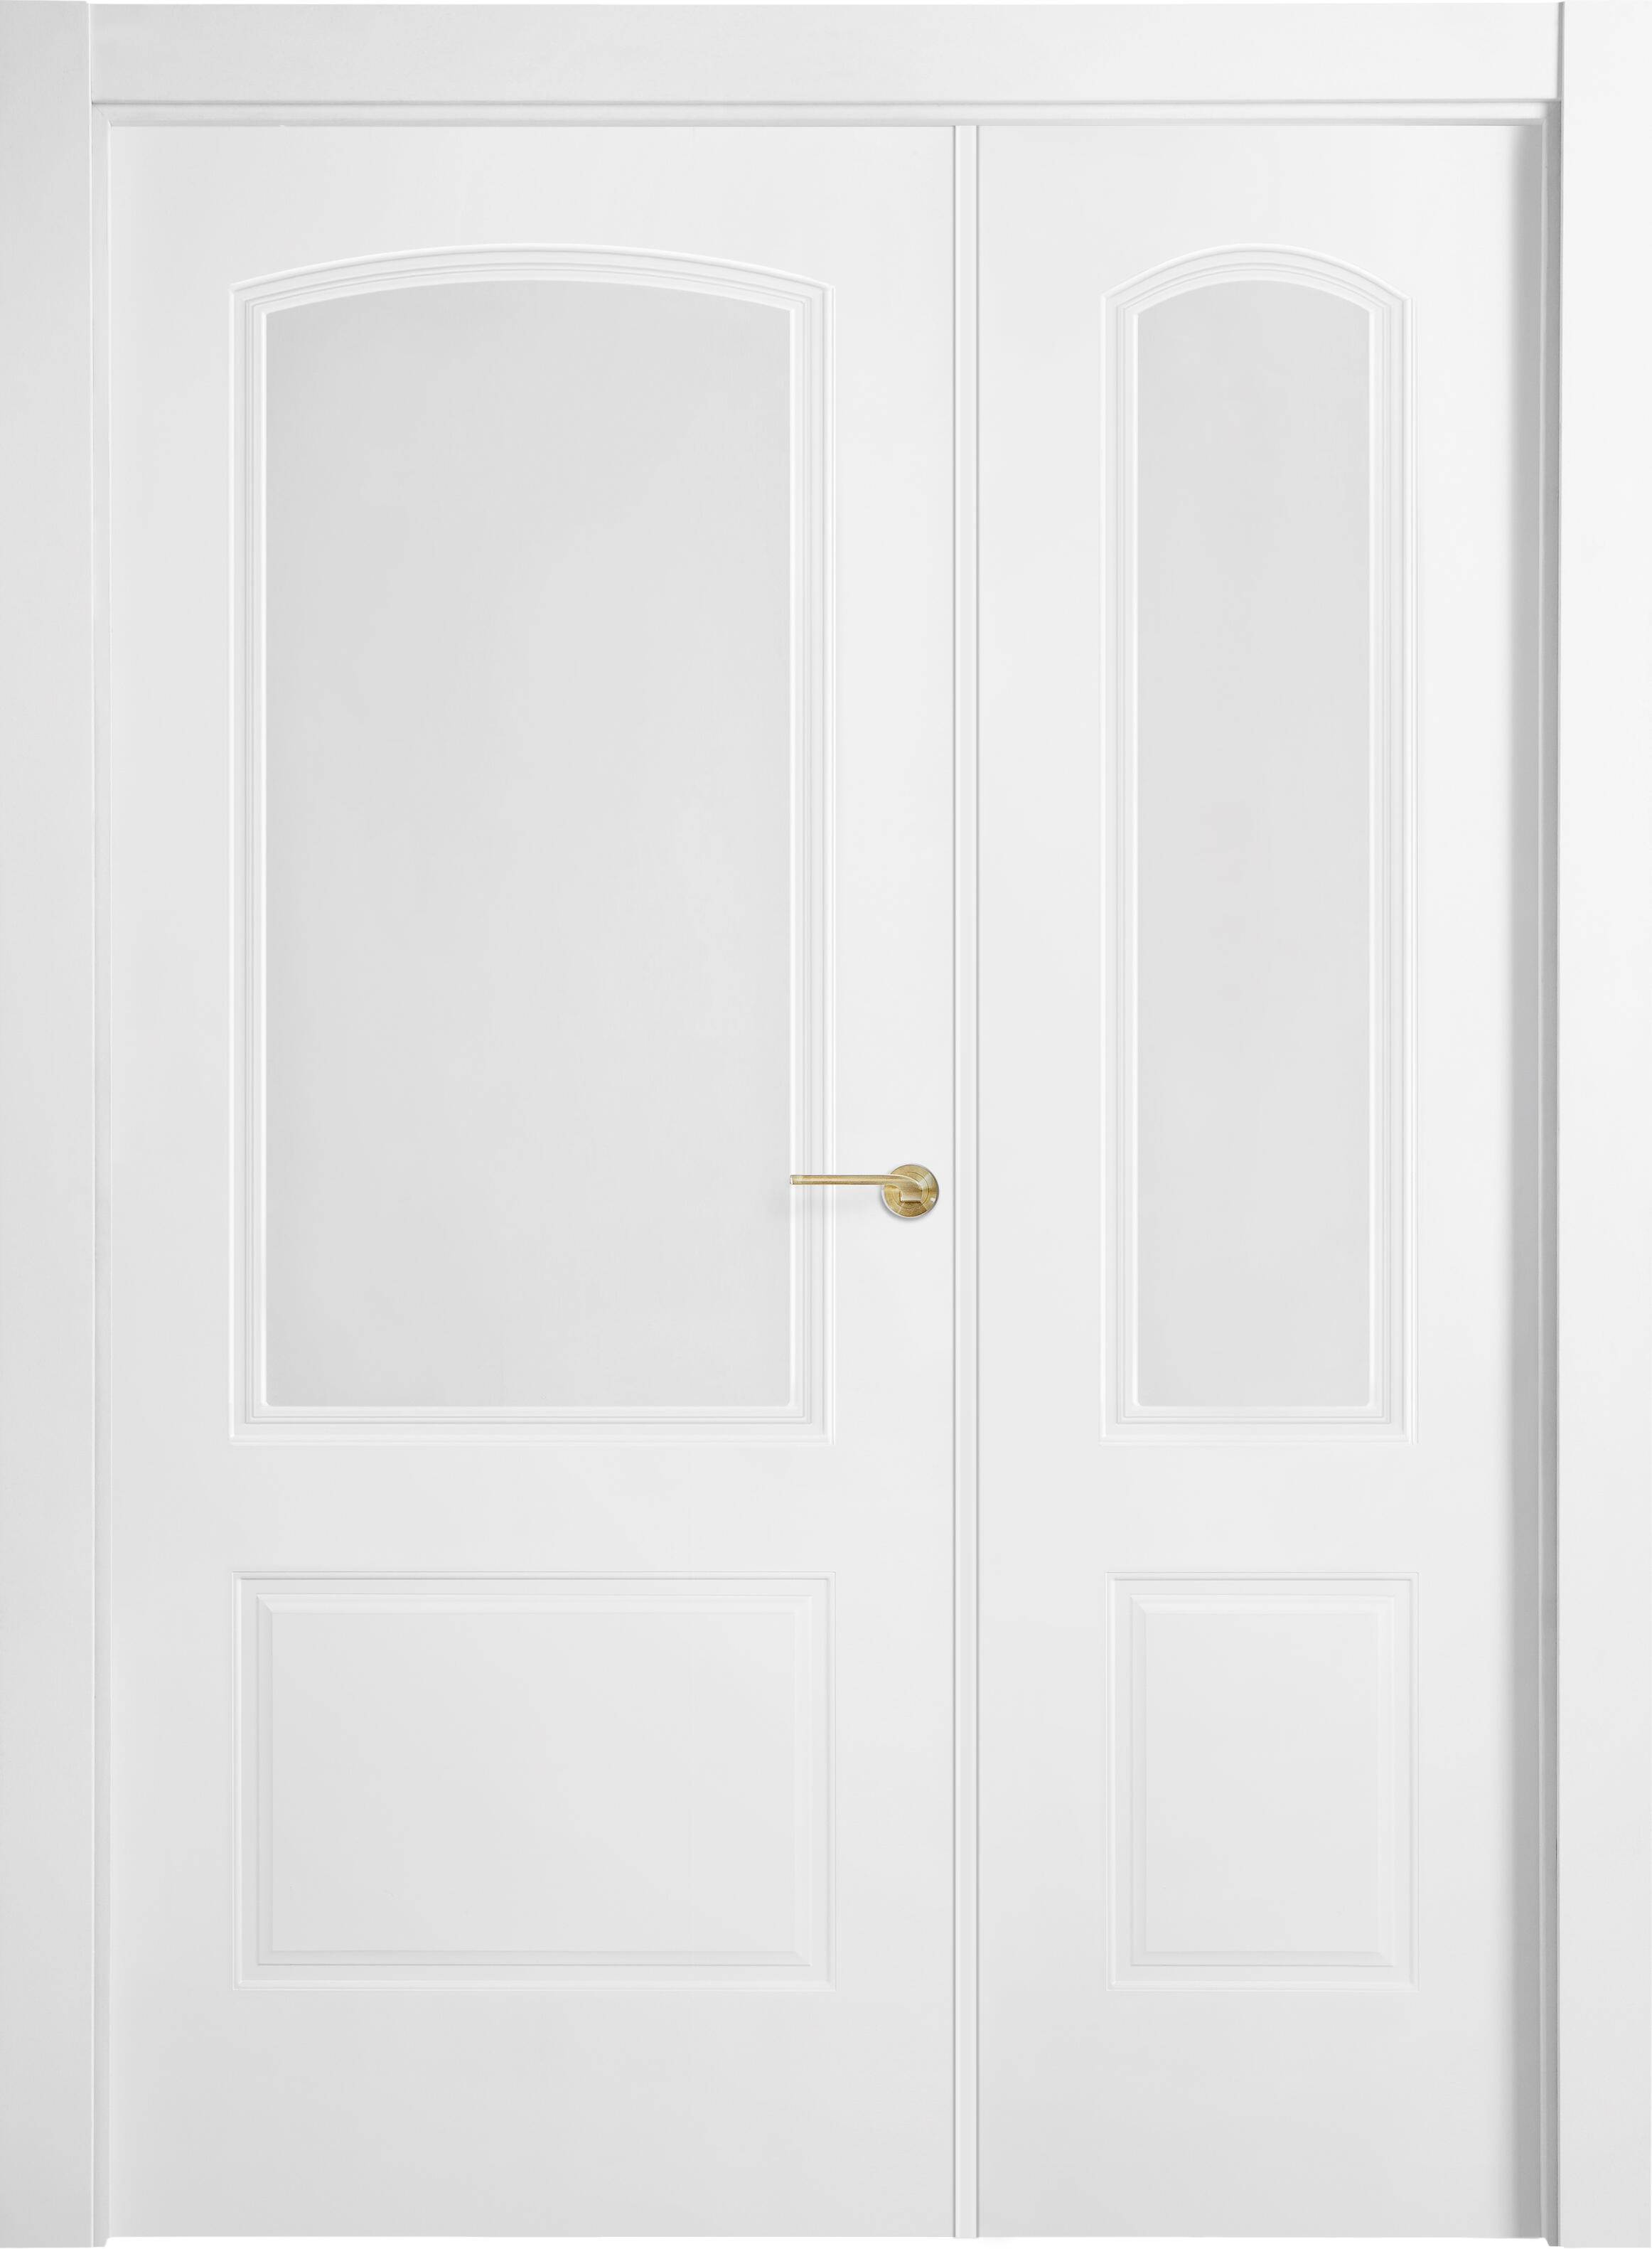 Puerta berlin plus blanco apertura izquierda con cristal 9x115cm